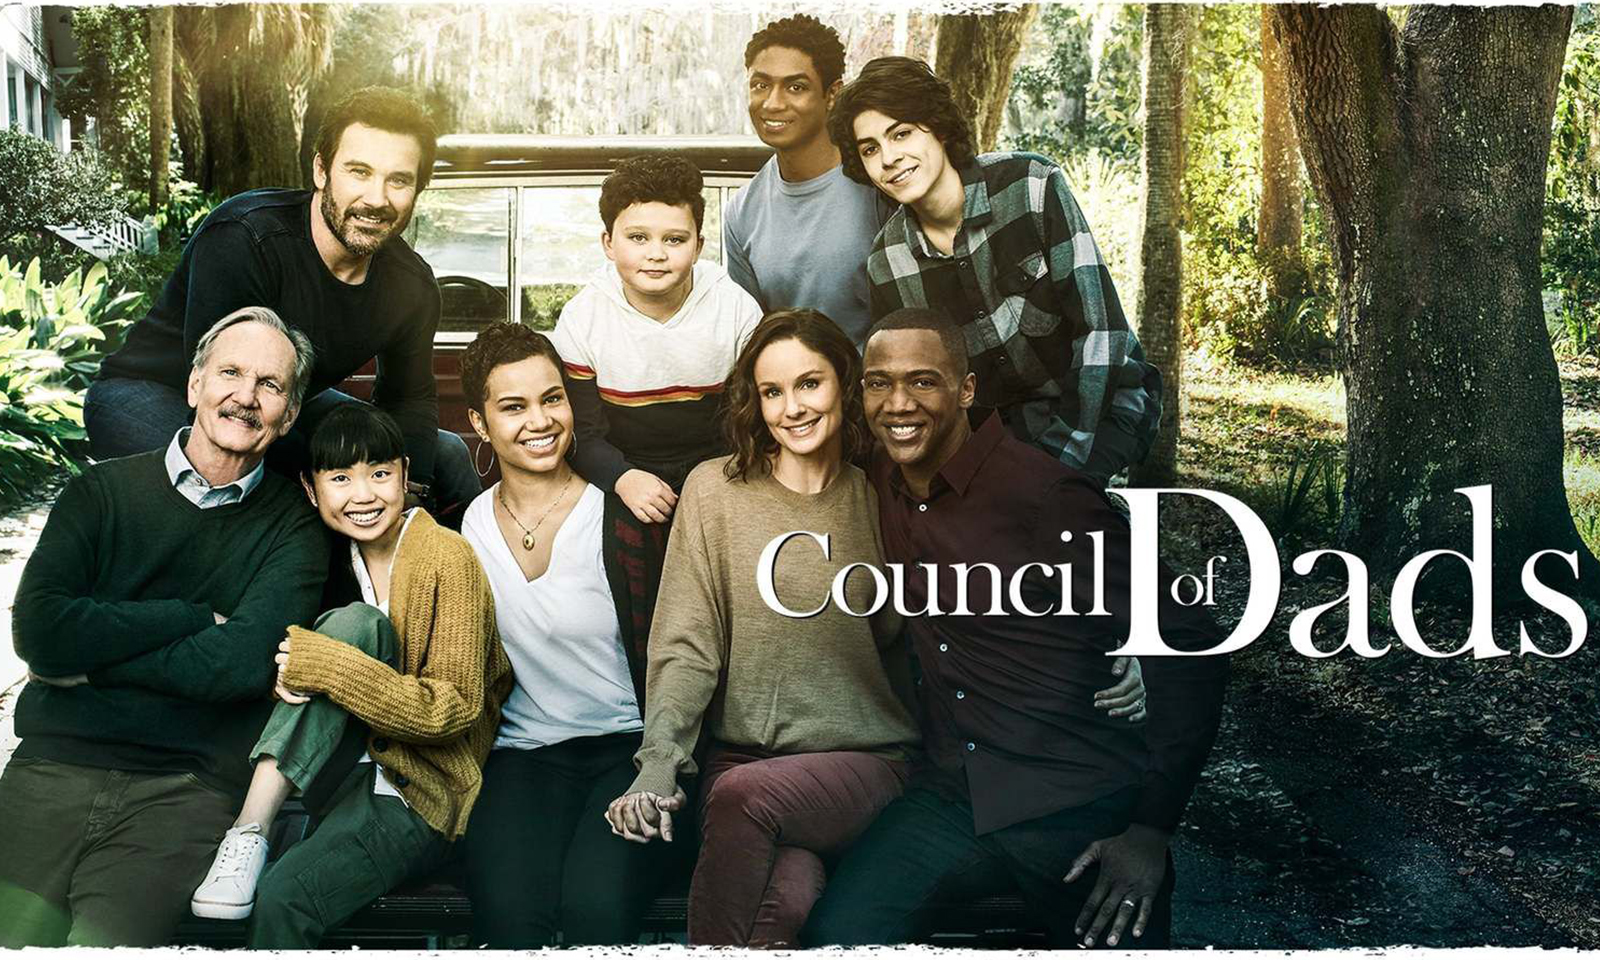 Council Of Dads | Série estrelada por Sarah Wayne Callies será lançada no Brasil